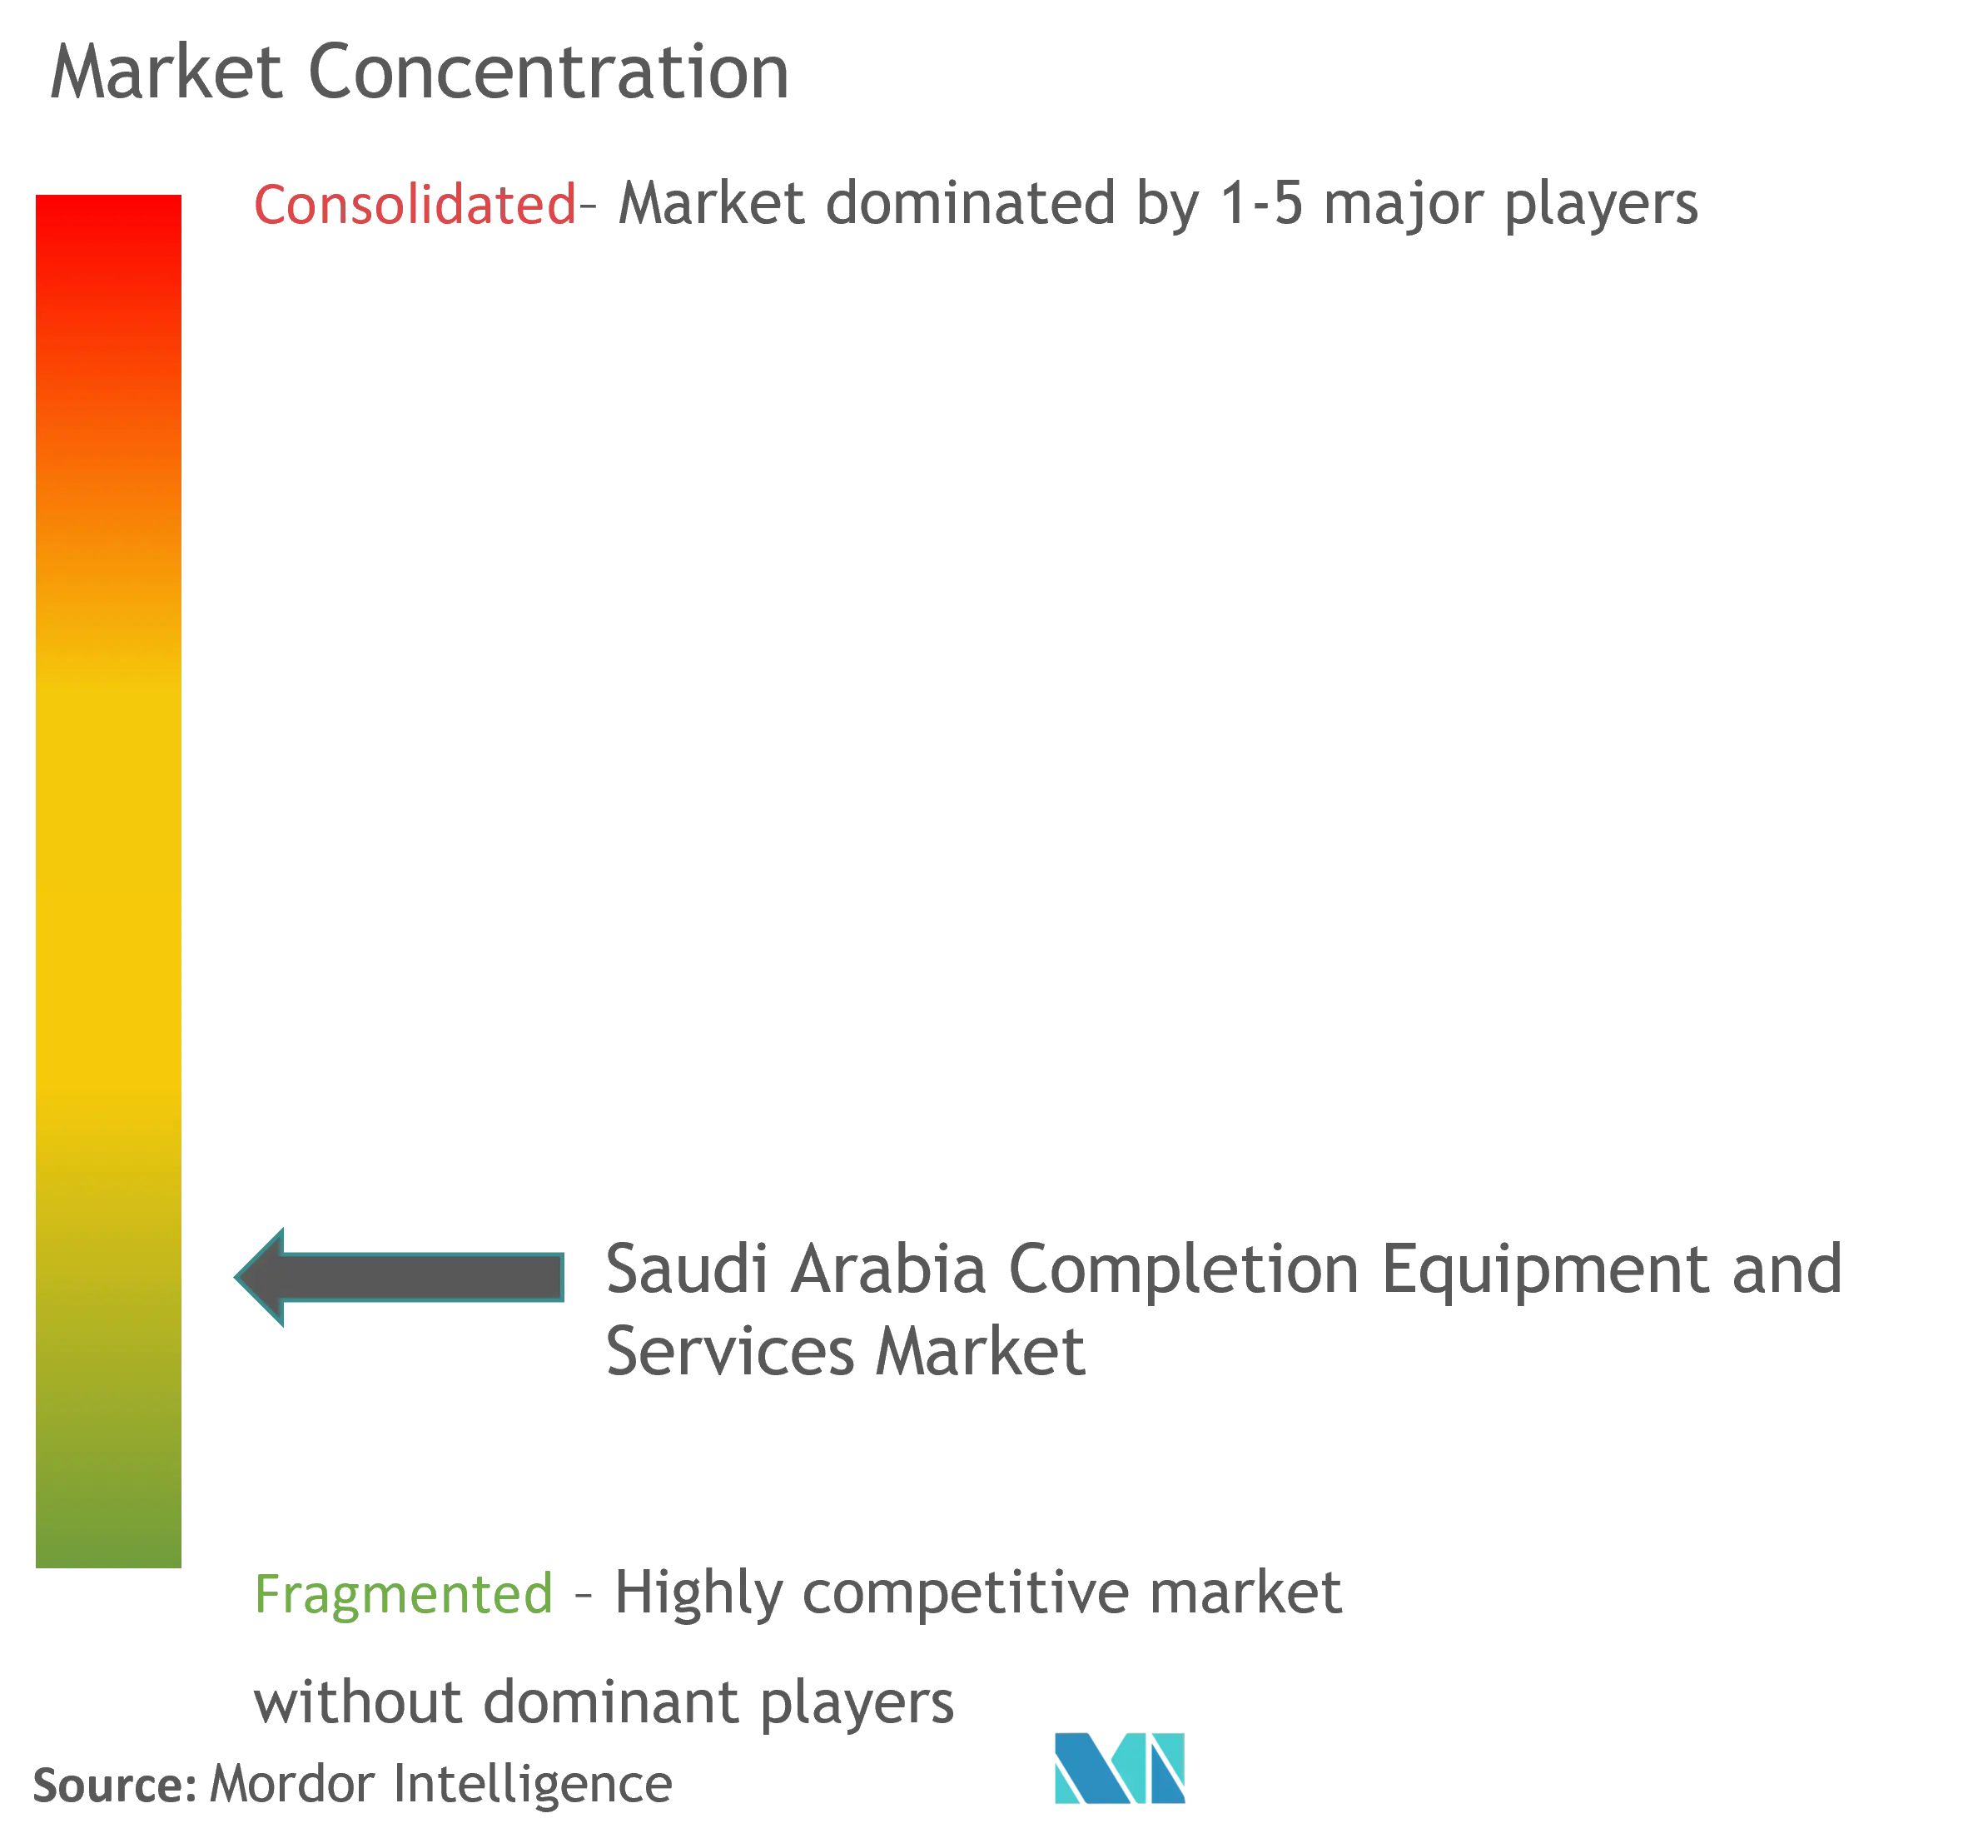 サウジアラビアのコンプリーション機器・サービス市場の集中度